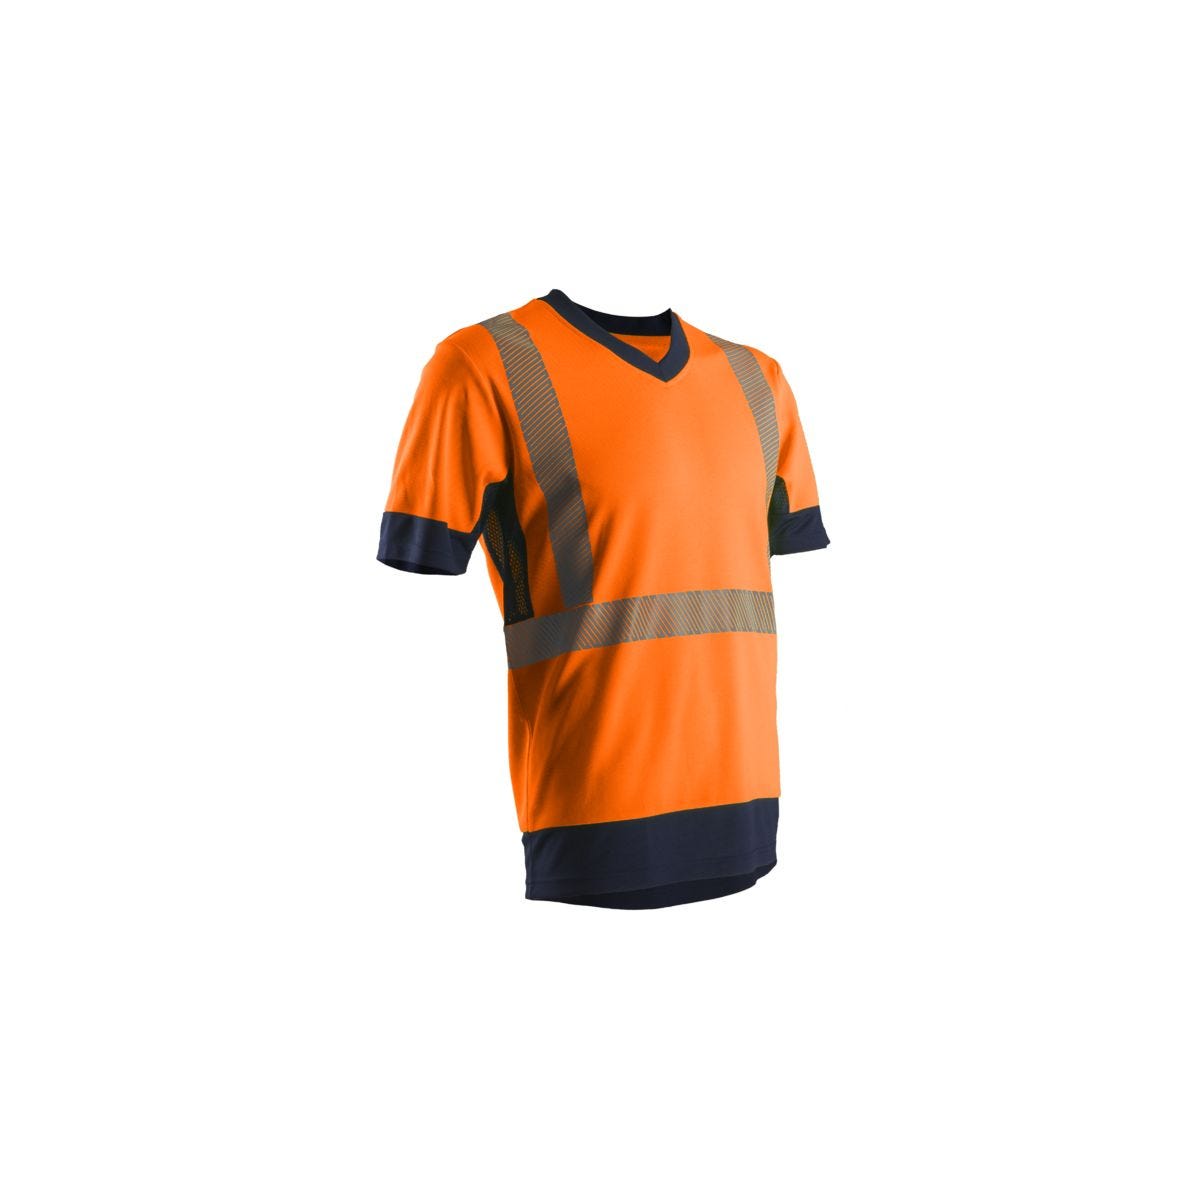 KOMO T-shirt MC, orange HV/marine, 55%CO/45%PES, 150g/m² - COVERGUARD - Taille S 0